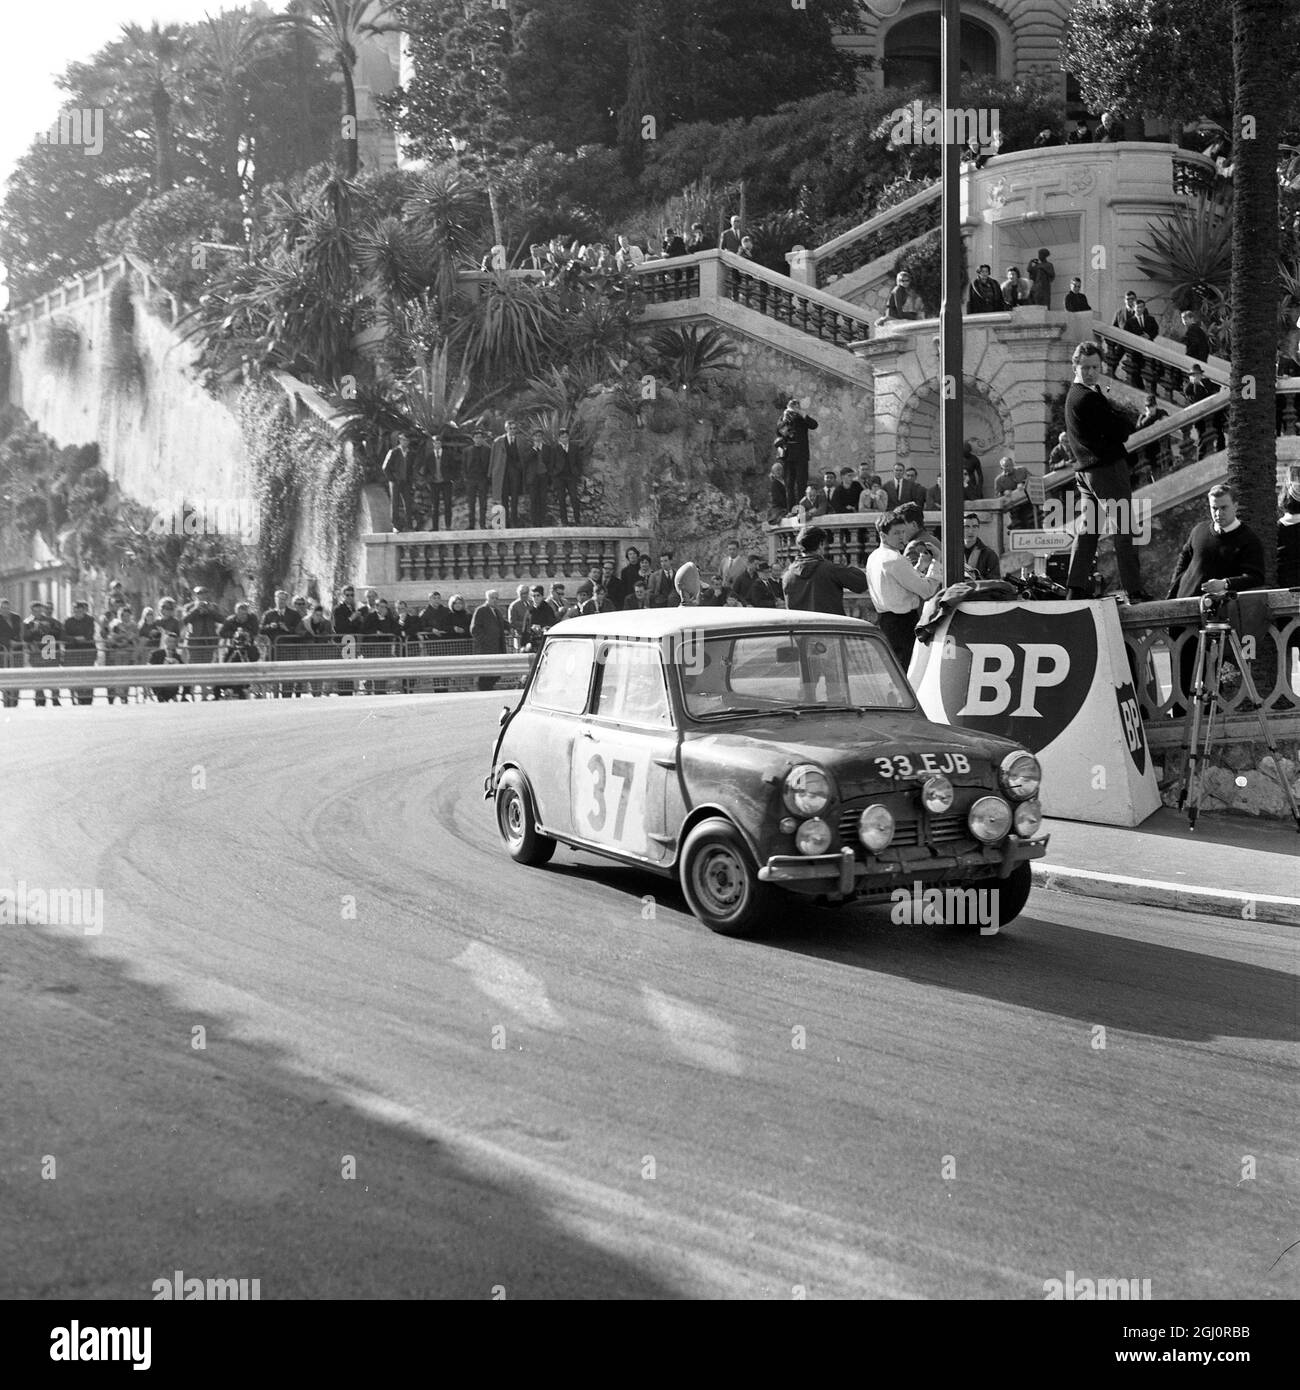 Autour des rues tortueuses de Monaco va le BMC mini-cooper du pilote britannique Paddy Hopkirk . Déjà en tête sur la performance générale , il est également arrivé premier dans le test final de vitesse . 24 janvier 1964 Banque D'Images